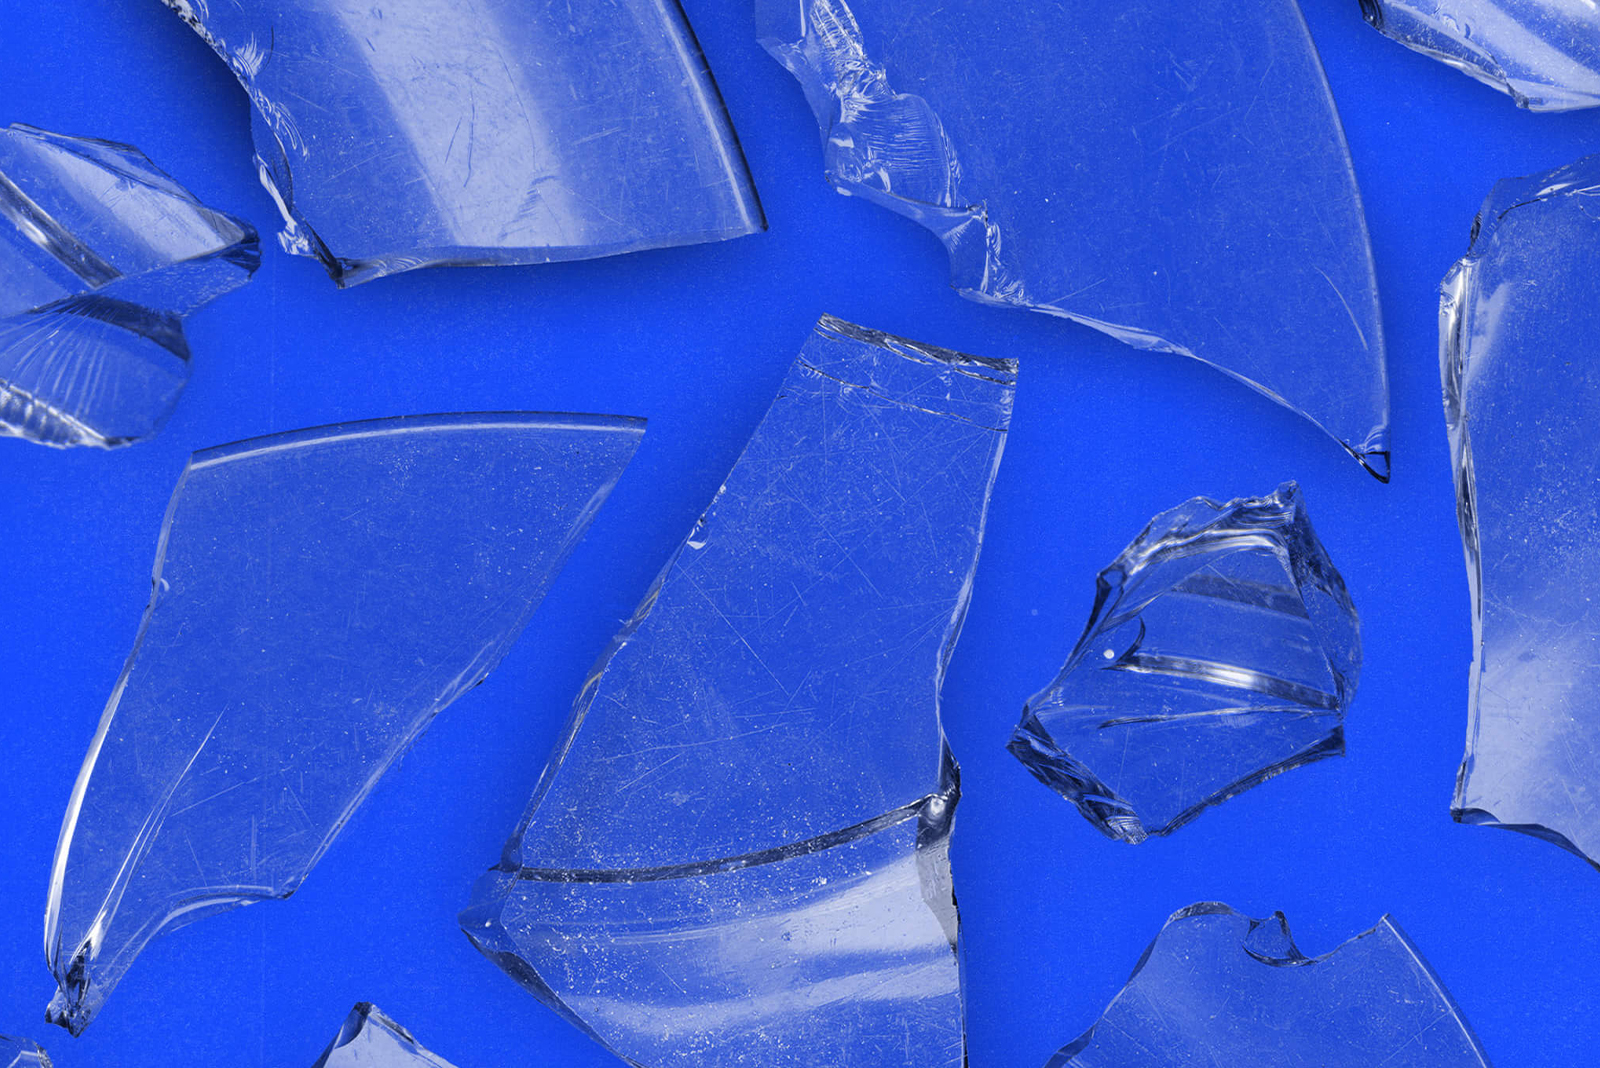 高分辨率破损玻璃设计装饰素材合辑包 BLKMARKET -